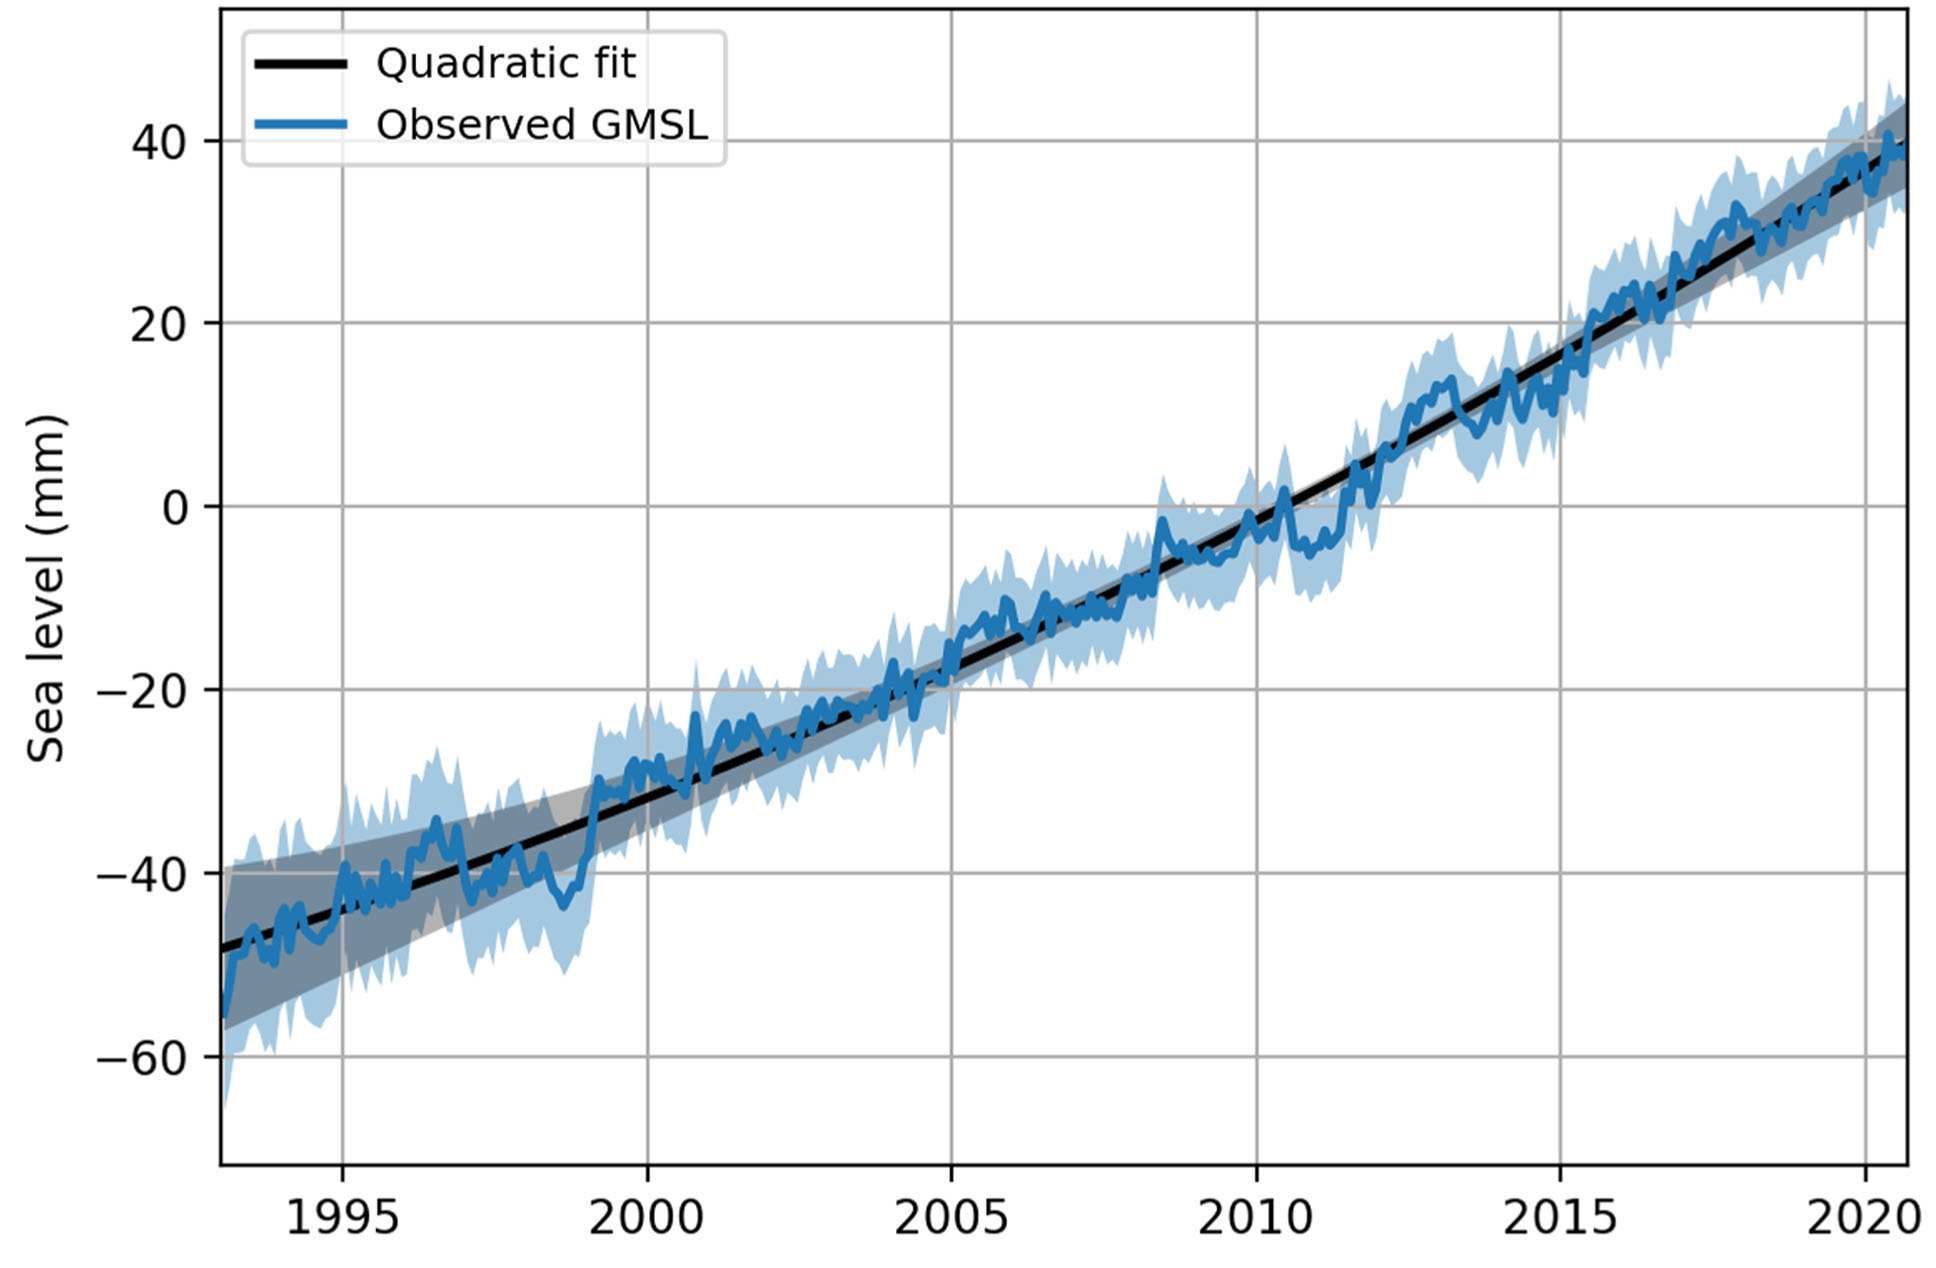 observed global mean sea level from Nerem et al. 2022